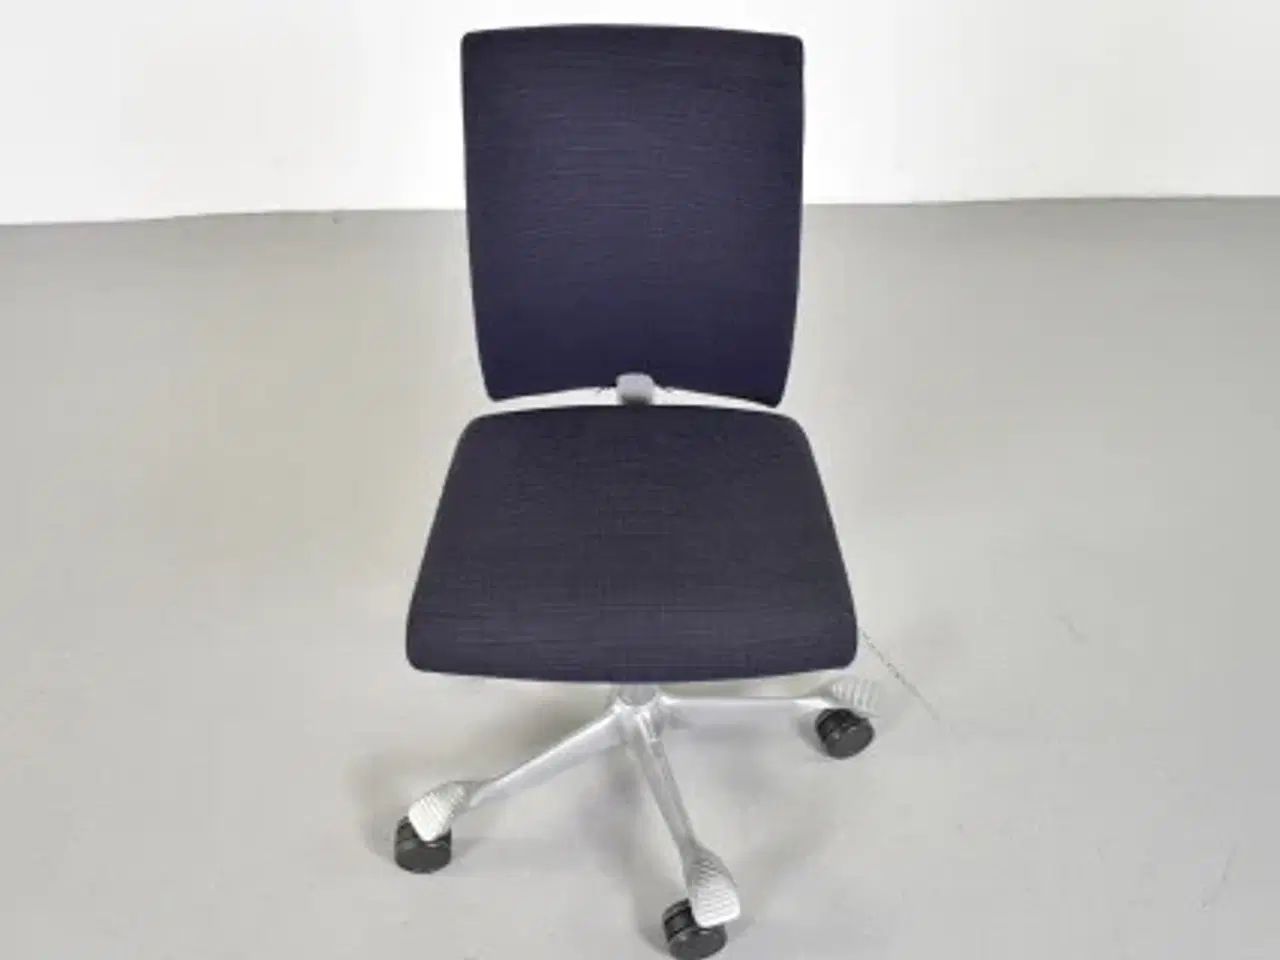 Billede 5 - Häg h04 4200 kontorstol med sort/blå polster og alugråt stel